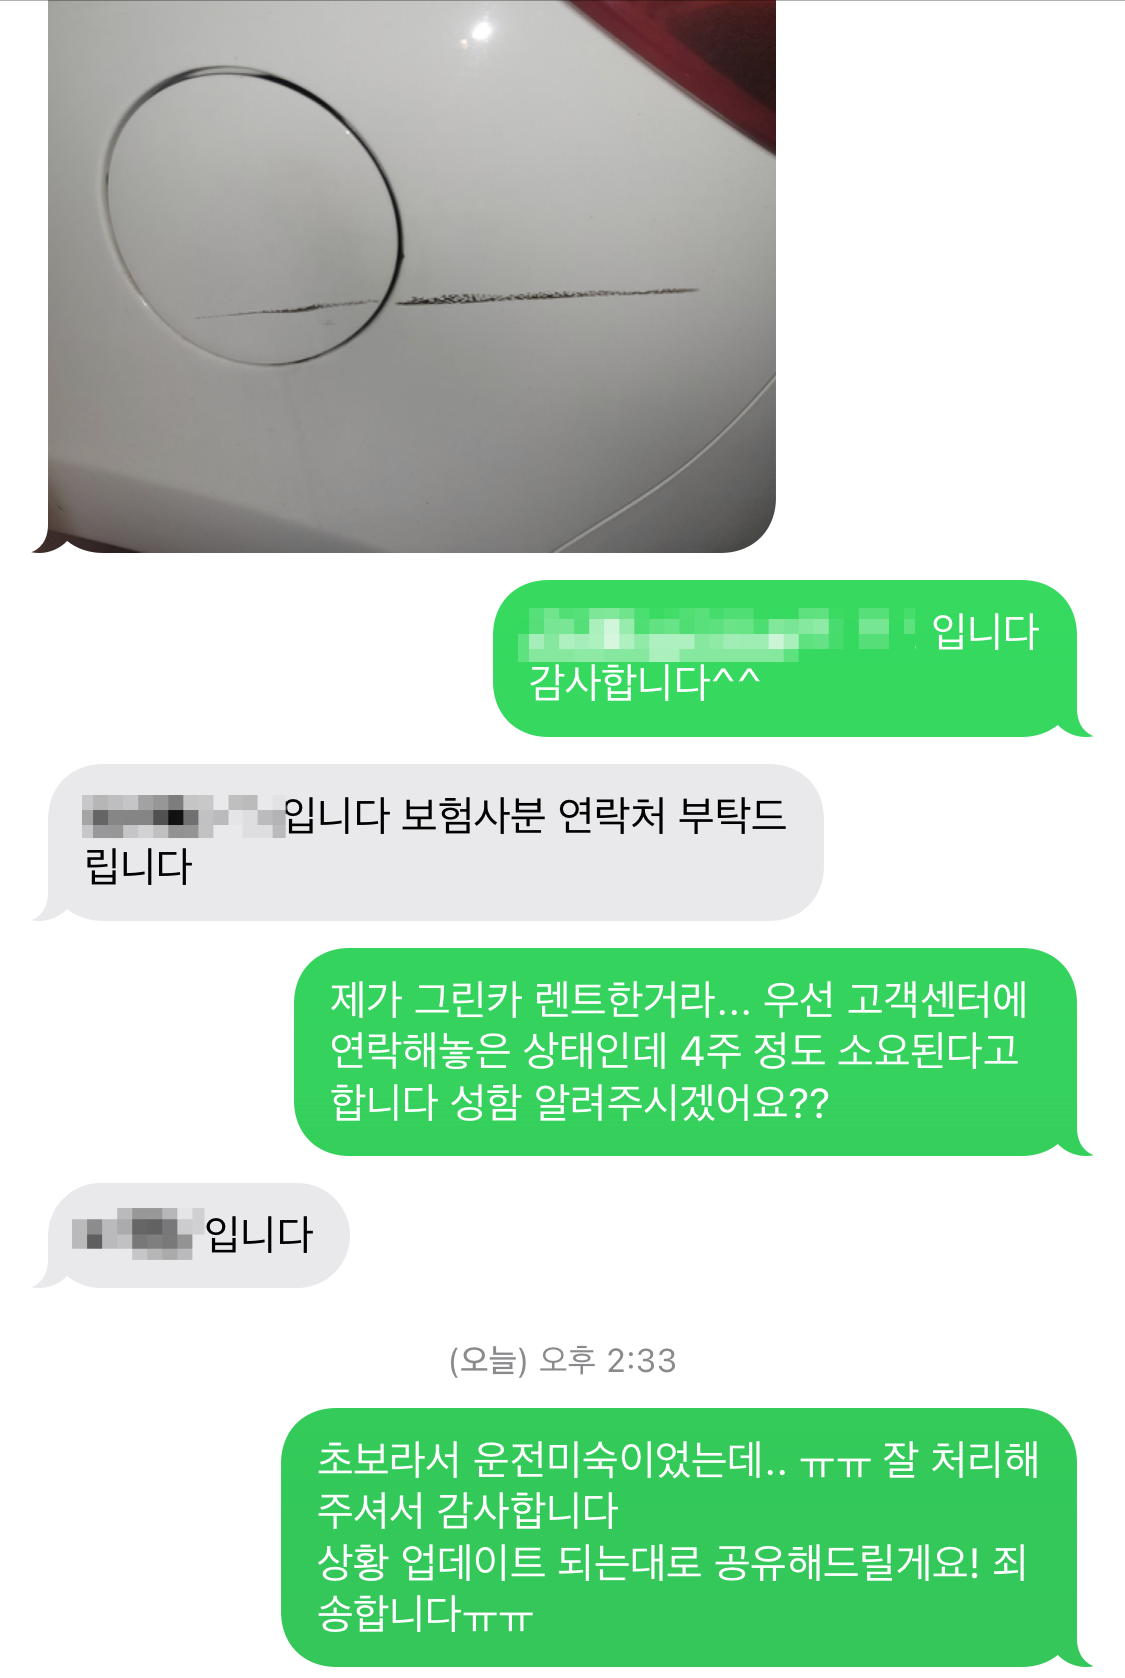 카쉐어링] 그린카 사고처리 휴차료 롯데렌탈 후기